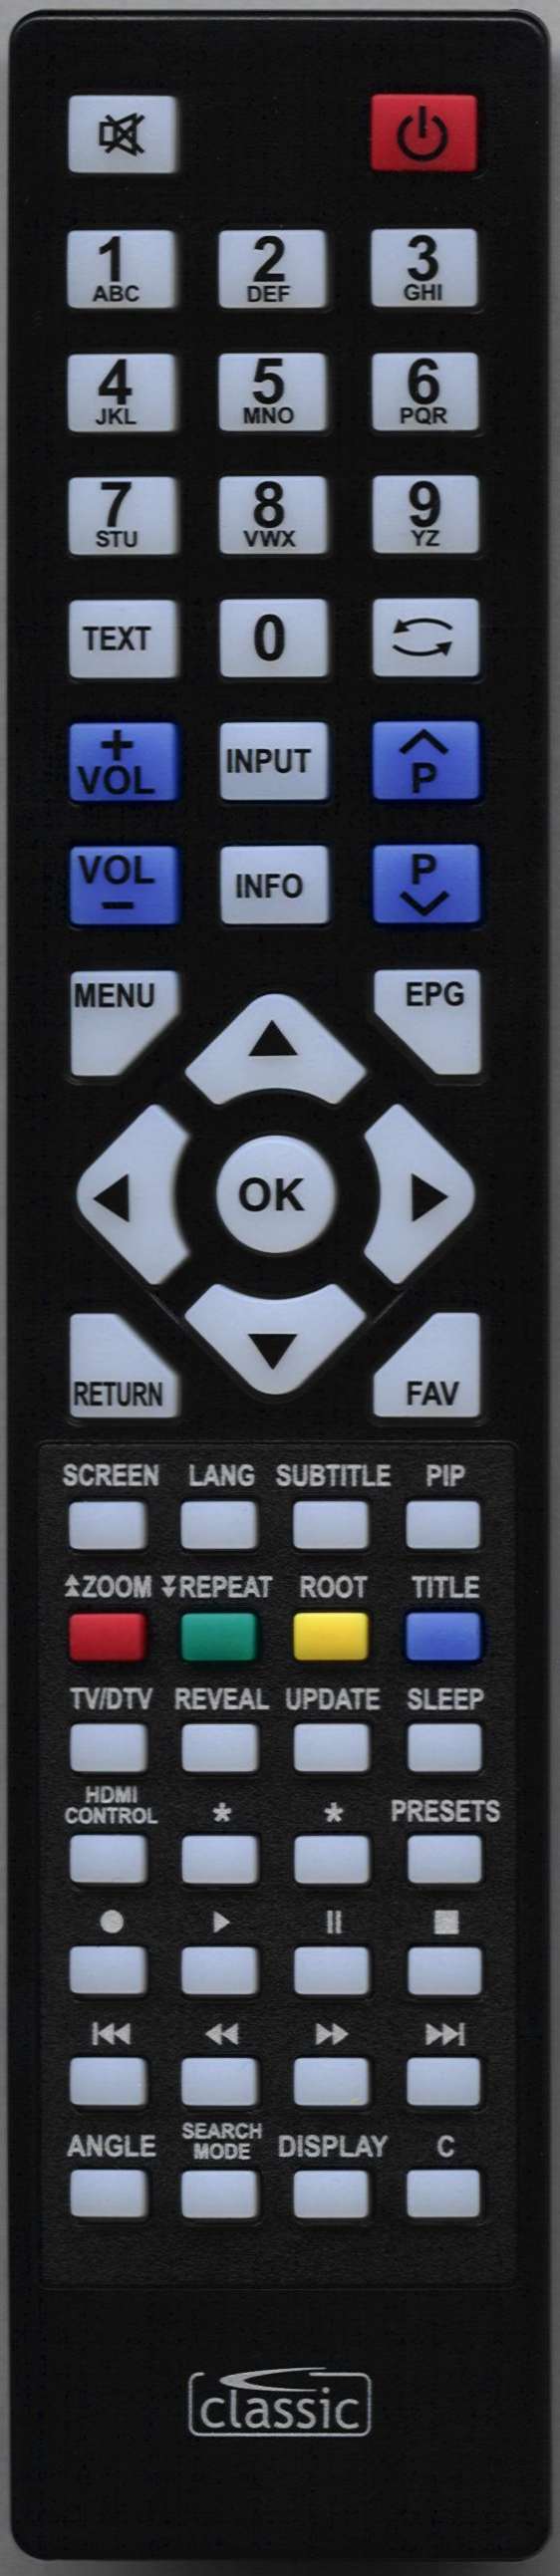 OKI V32B-LED2 Remote Control